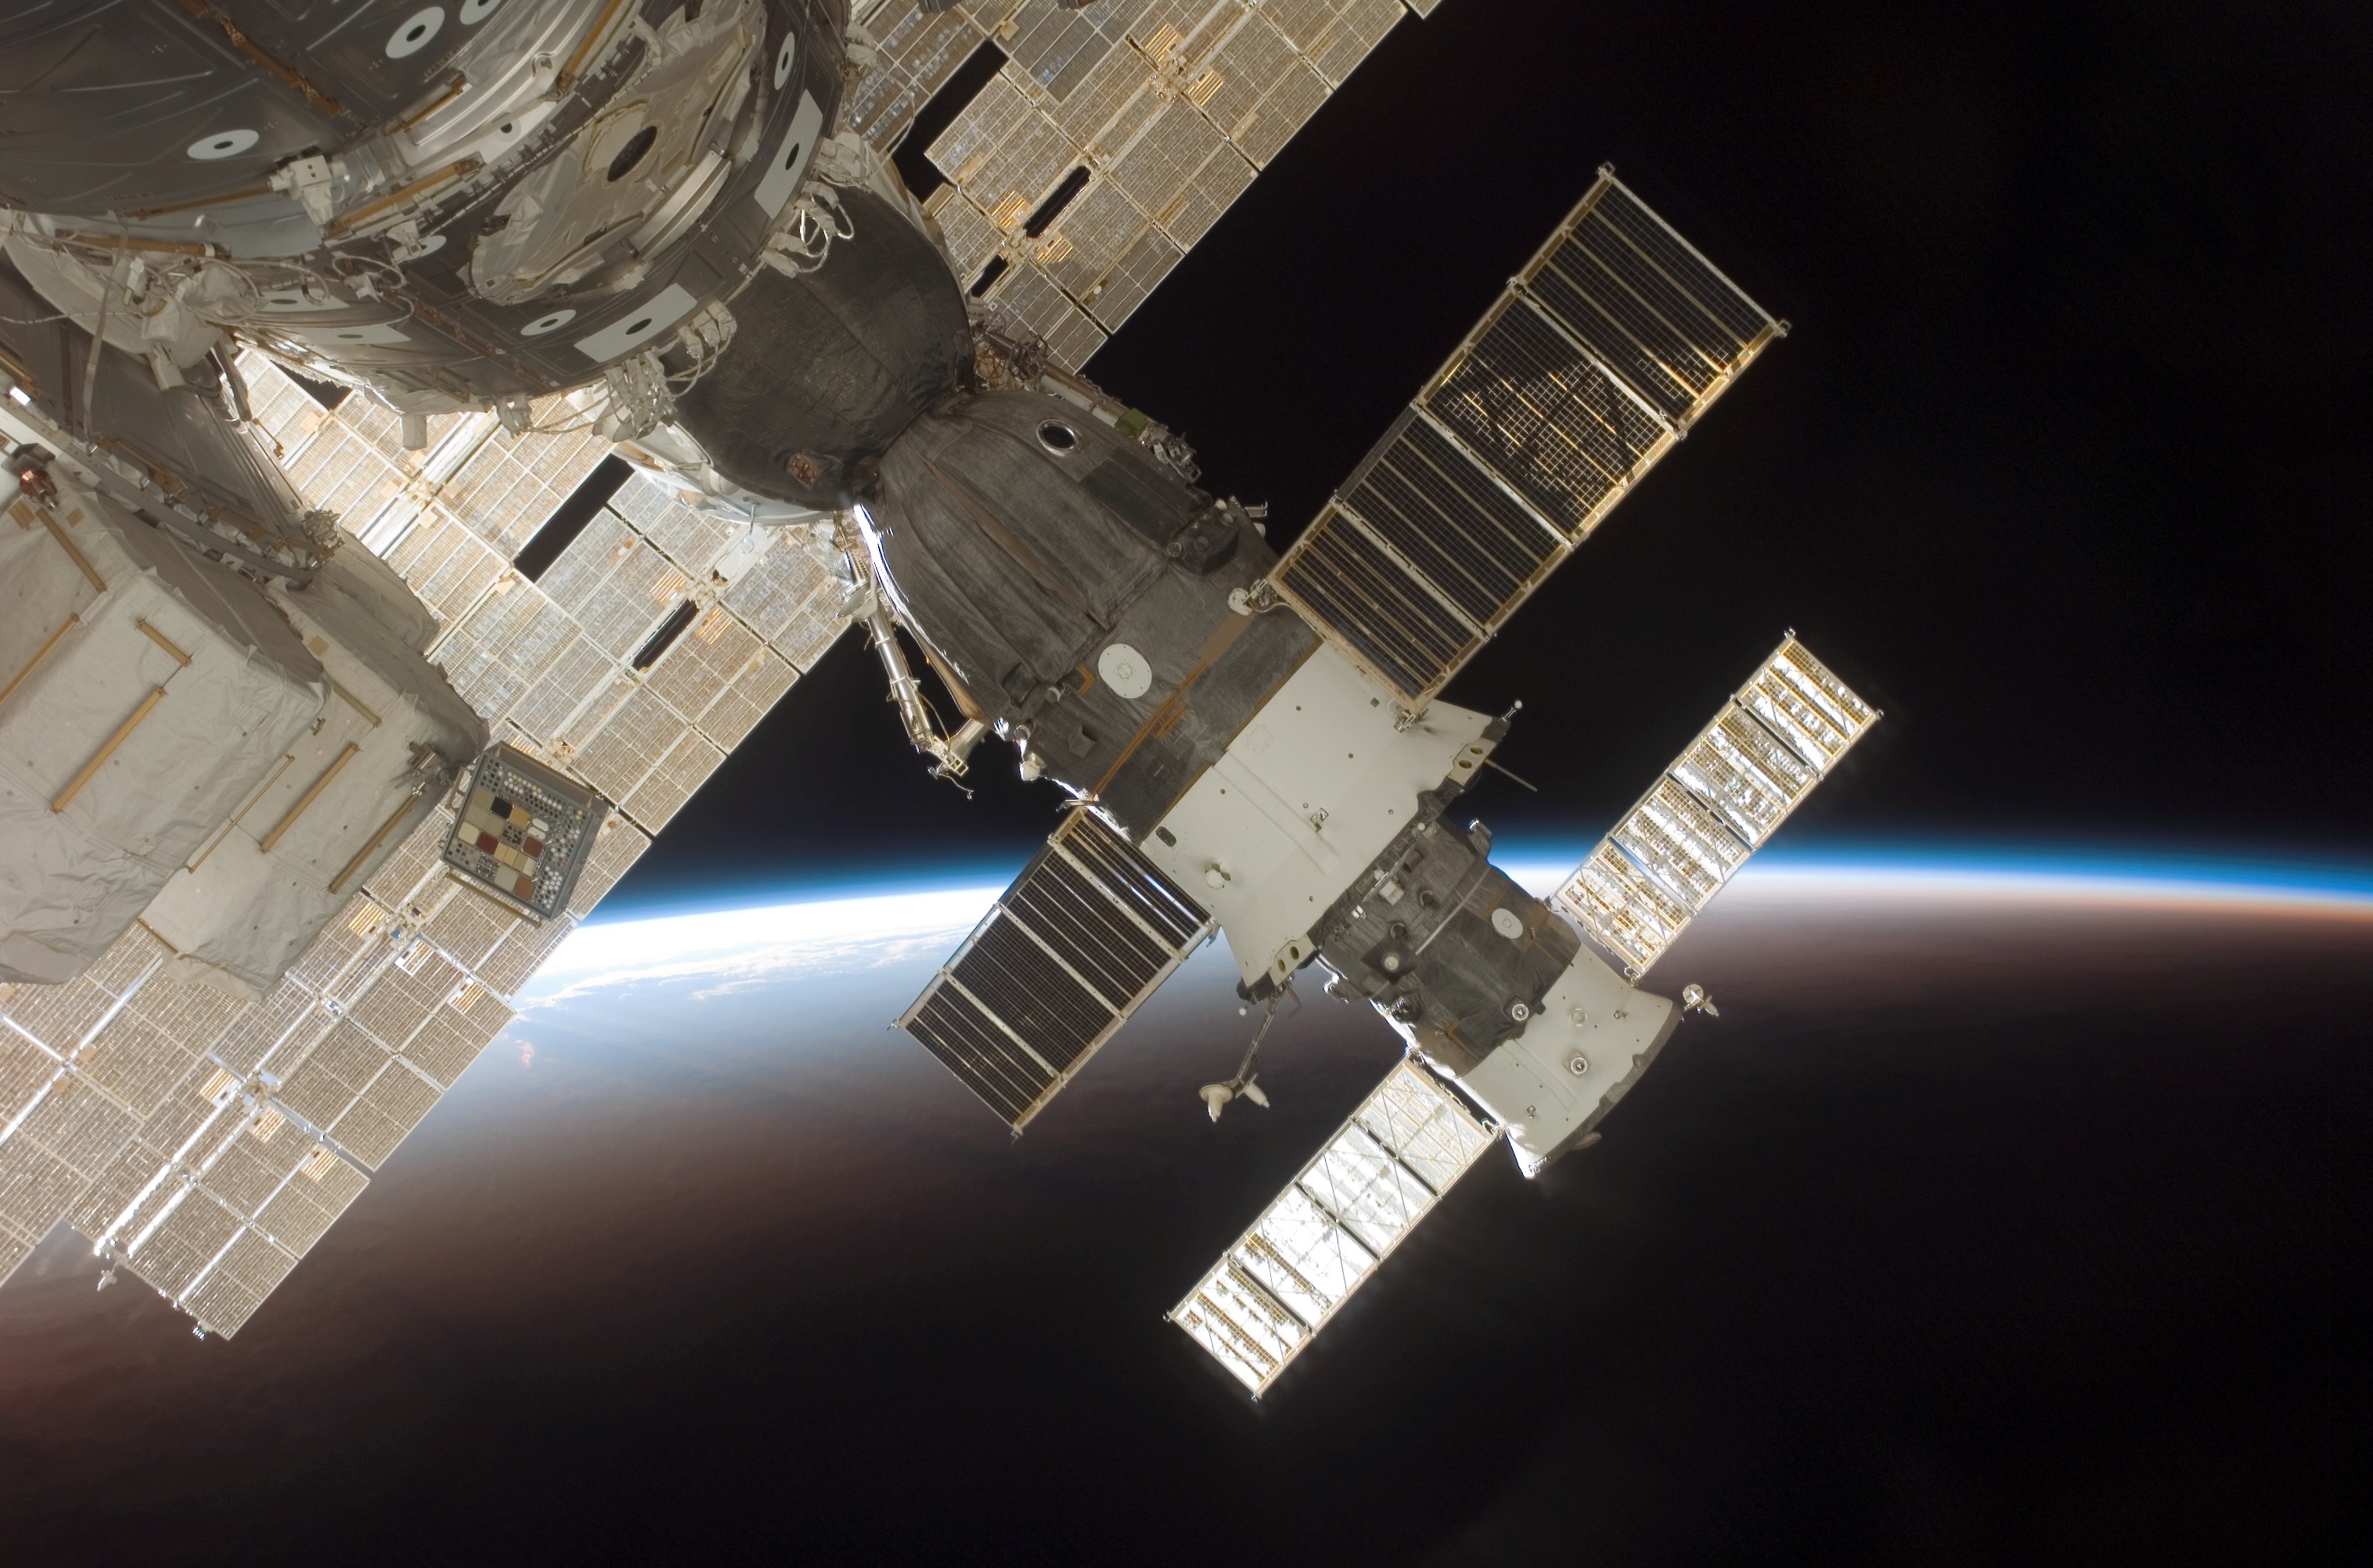 Soyuz TMA-9 at ISS (NASA S116-E-06753)